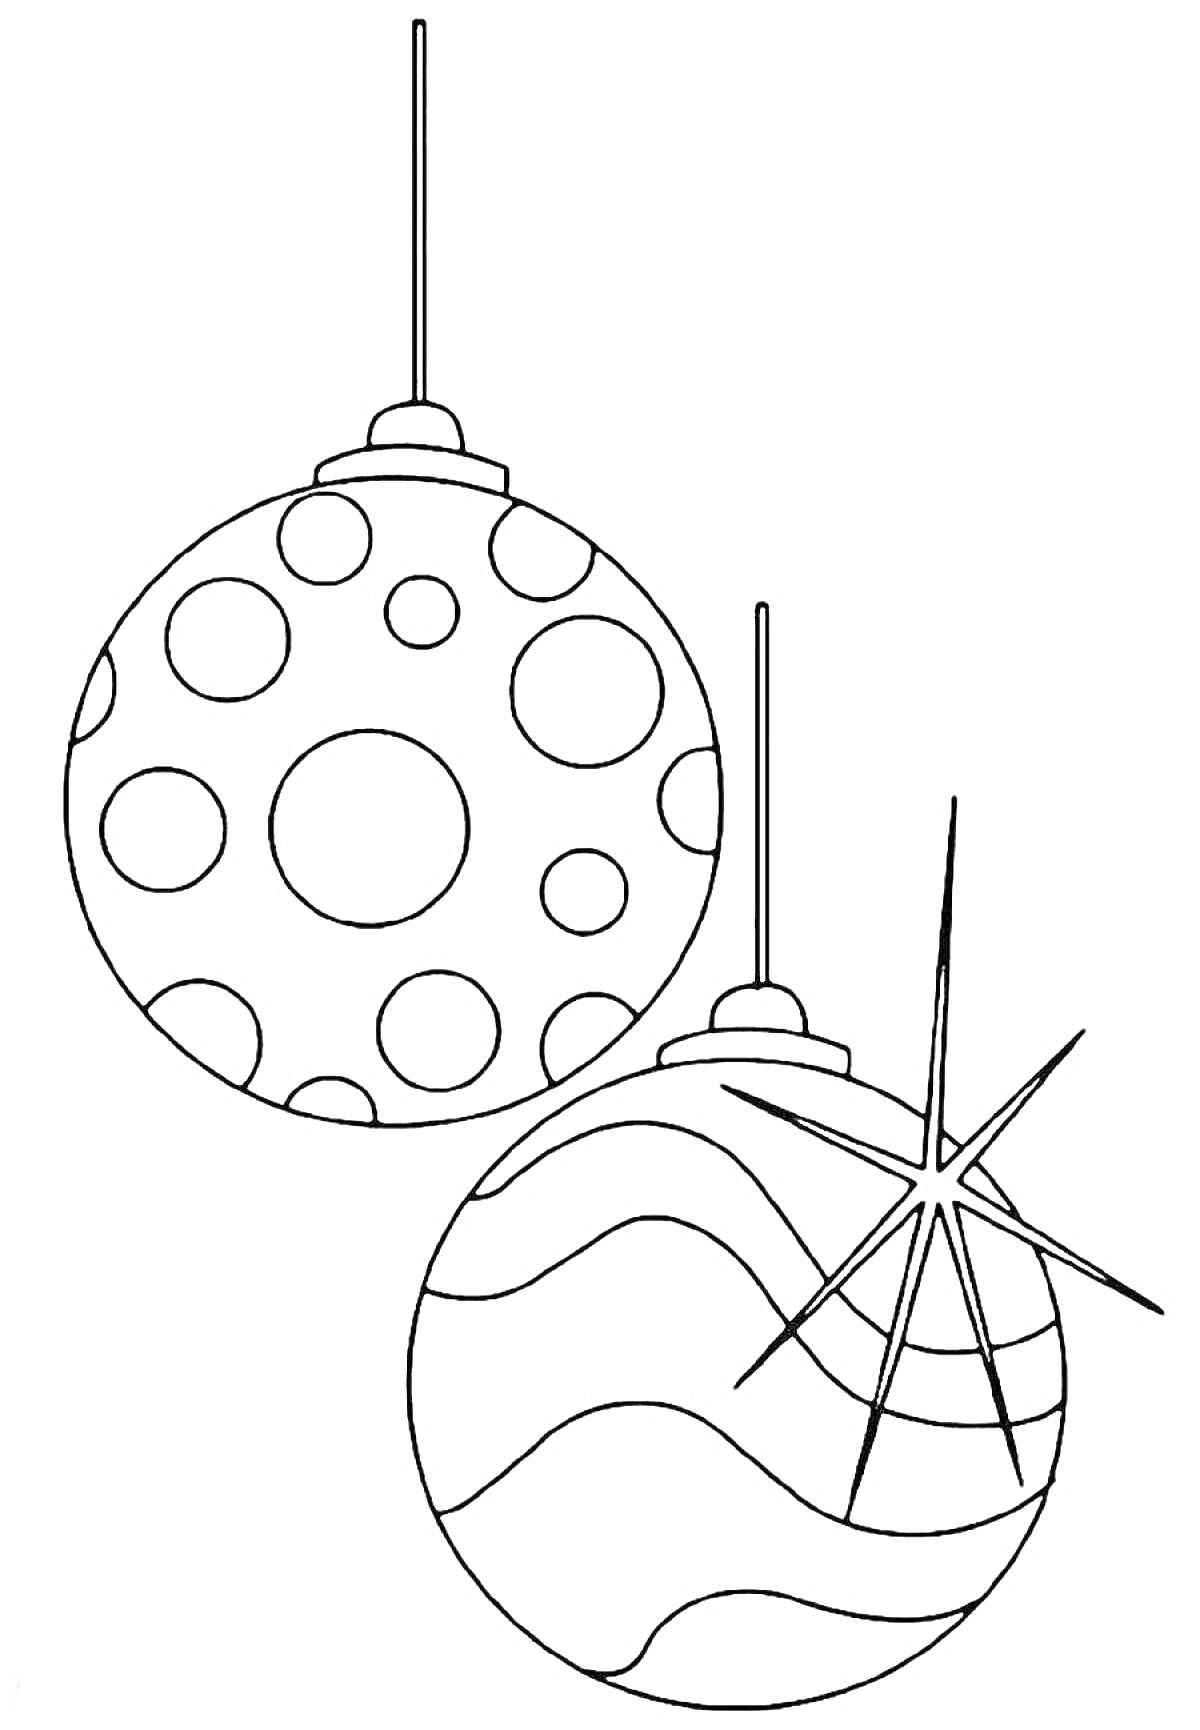 Два новогодних шара, один с круглым узором, другой с волнистыми линиями и декоративной звездой